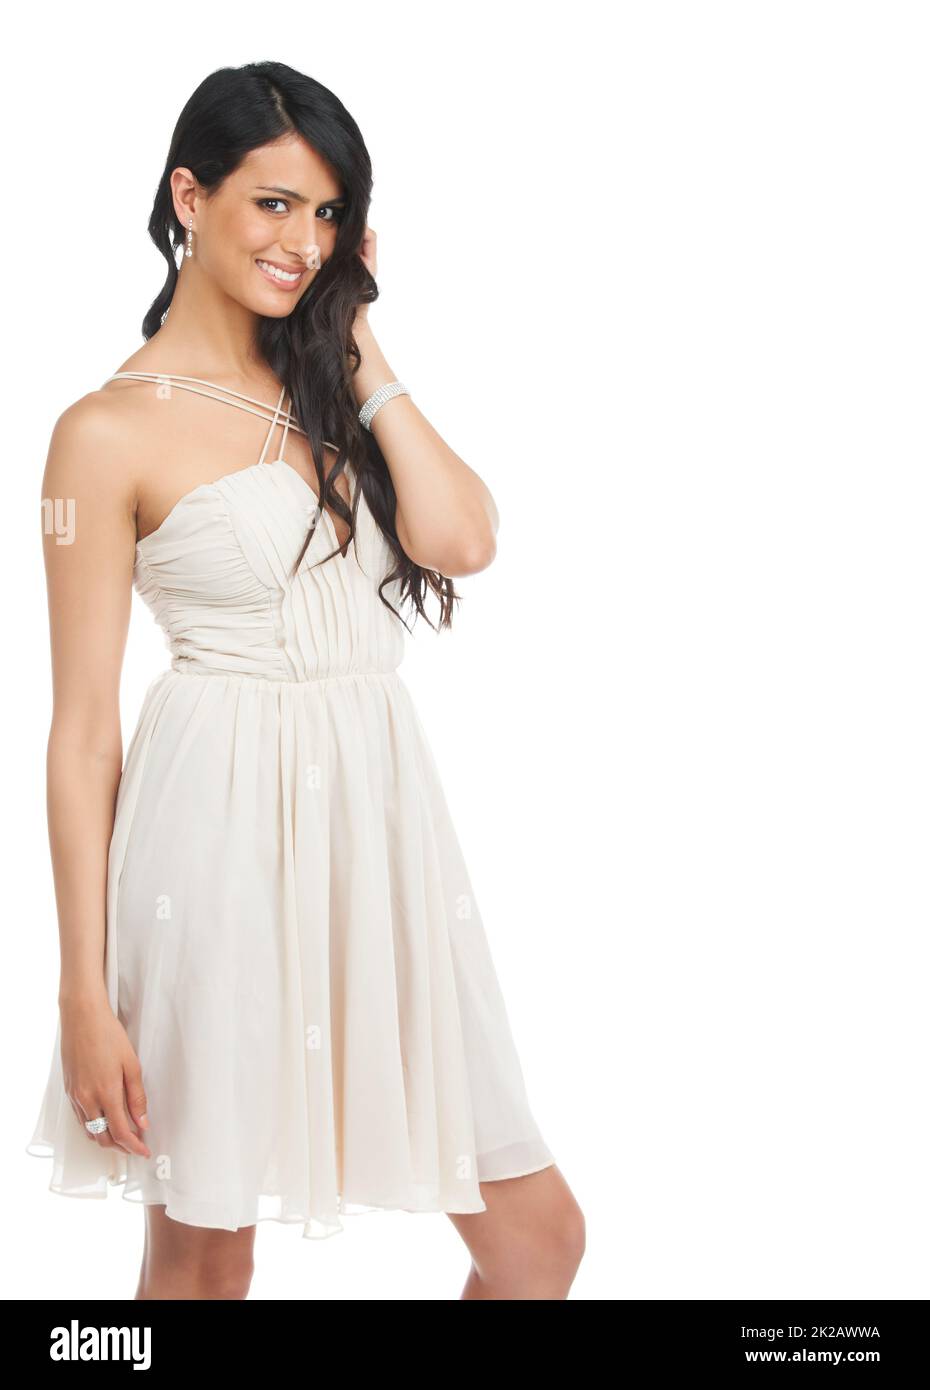 Alle Jungs träumen Mädchen. Studioaufnahme einer attraktiven jungen Frau in einem Cocktailkleid, das vor weißem Hintergrund posiert. Stockfoto